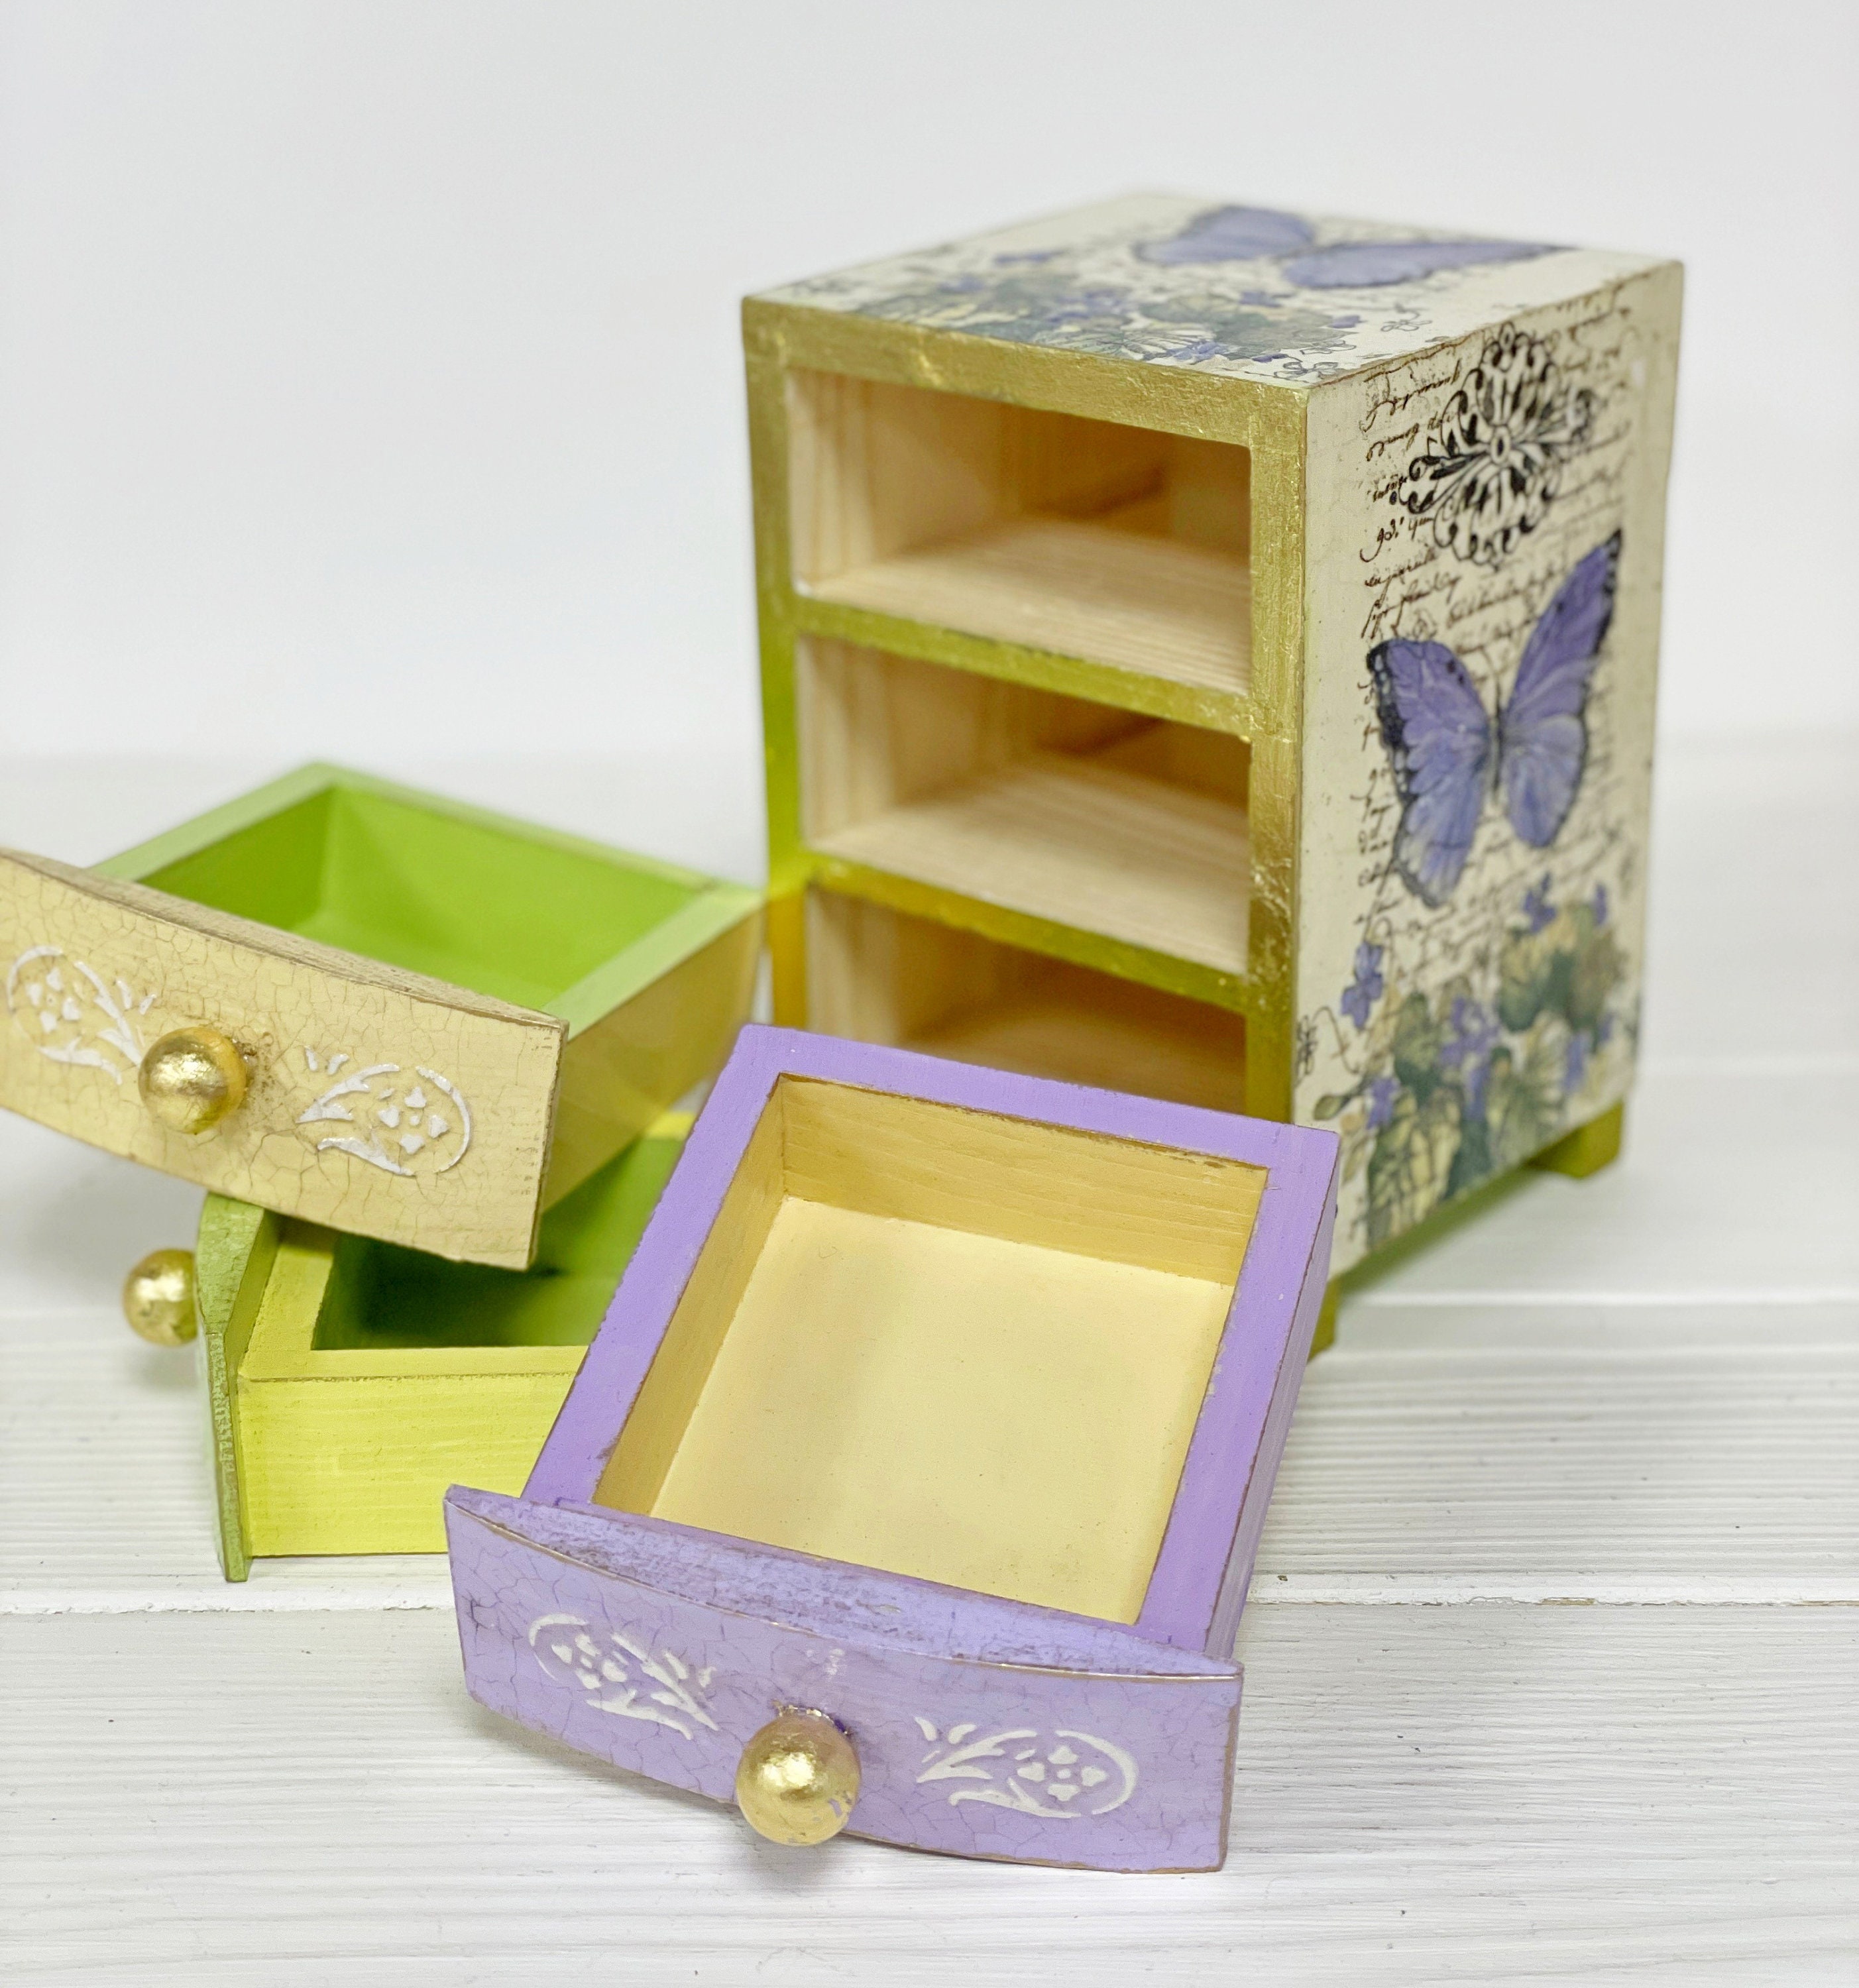 MNSRUU Joyero pequeño con diseño de mariposas coloridas, color beige, mini  joyero de viaje, portátil, caja de accesorios de joyería, cajas pequeñas